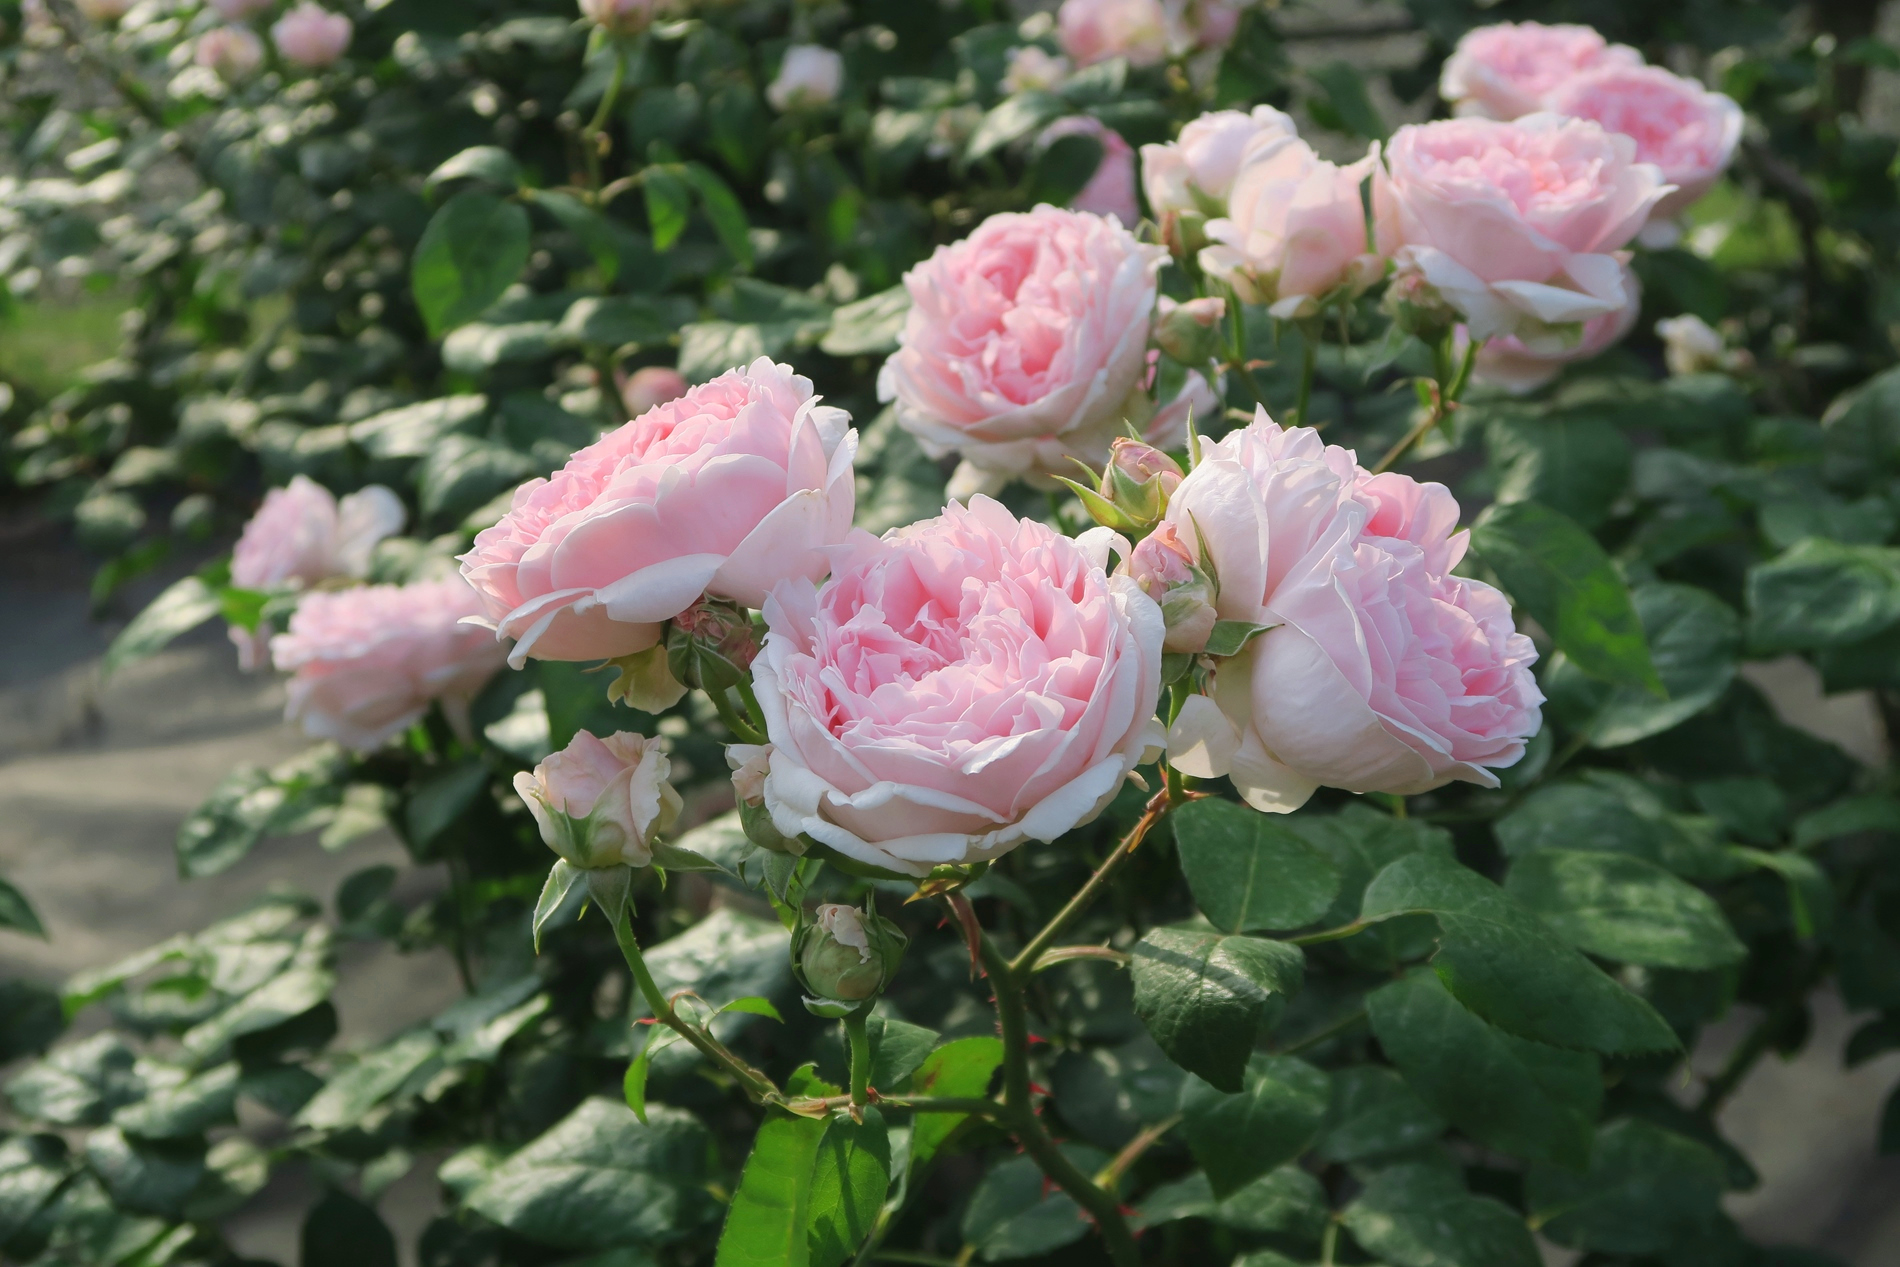 旧古河庭園 超 かわいくないですか イギリスのバラの育種家 デビット オースチンによって作られた エグランタイン です 花びらたっぷりのロゼット咲き イングリッシュローズを代表する素晴らしいバラ 旧古河庭園 バラ 休園中 ツイッターで